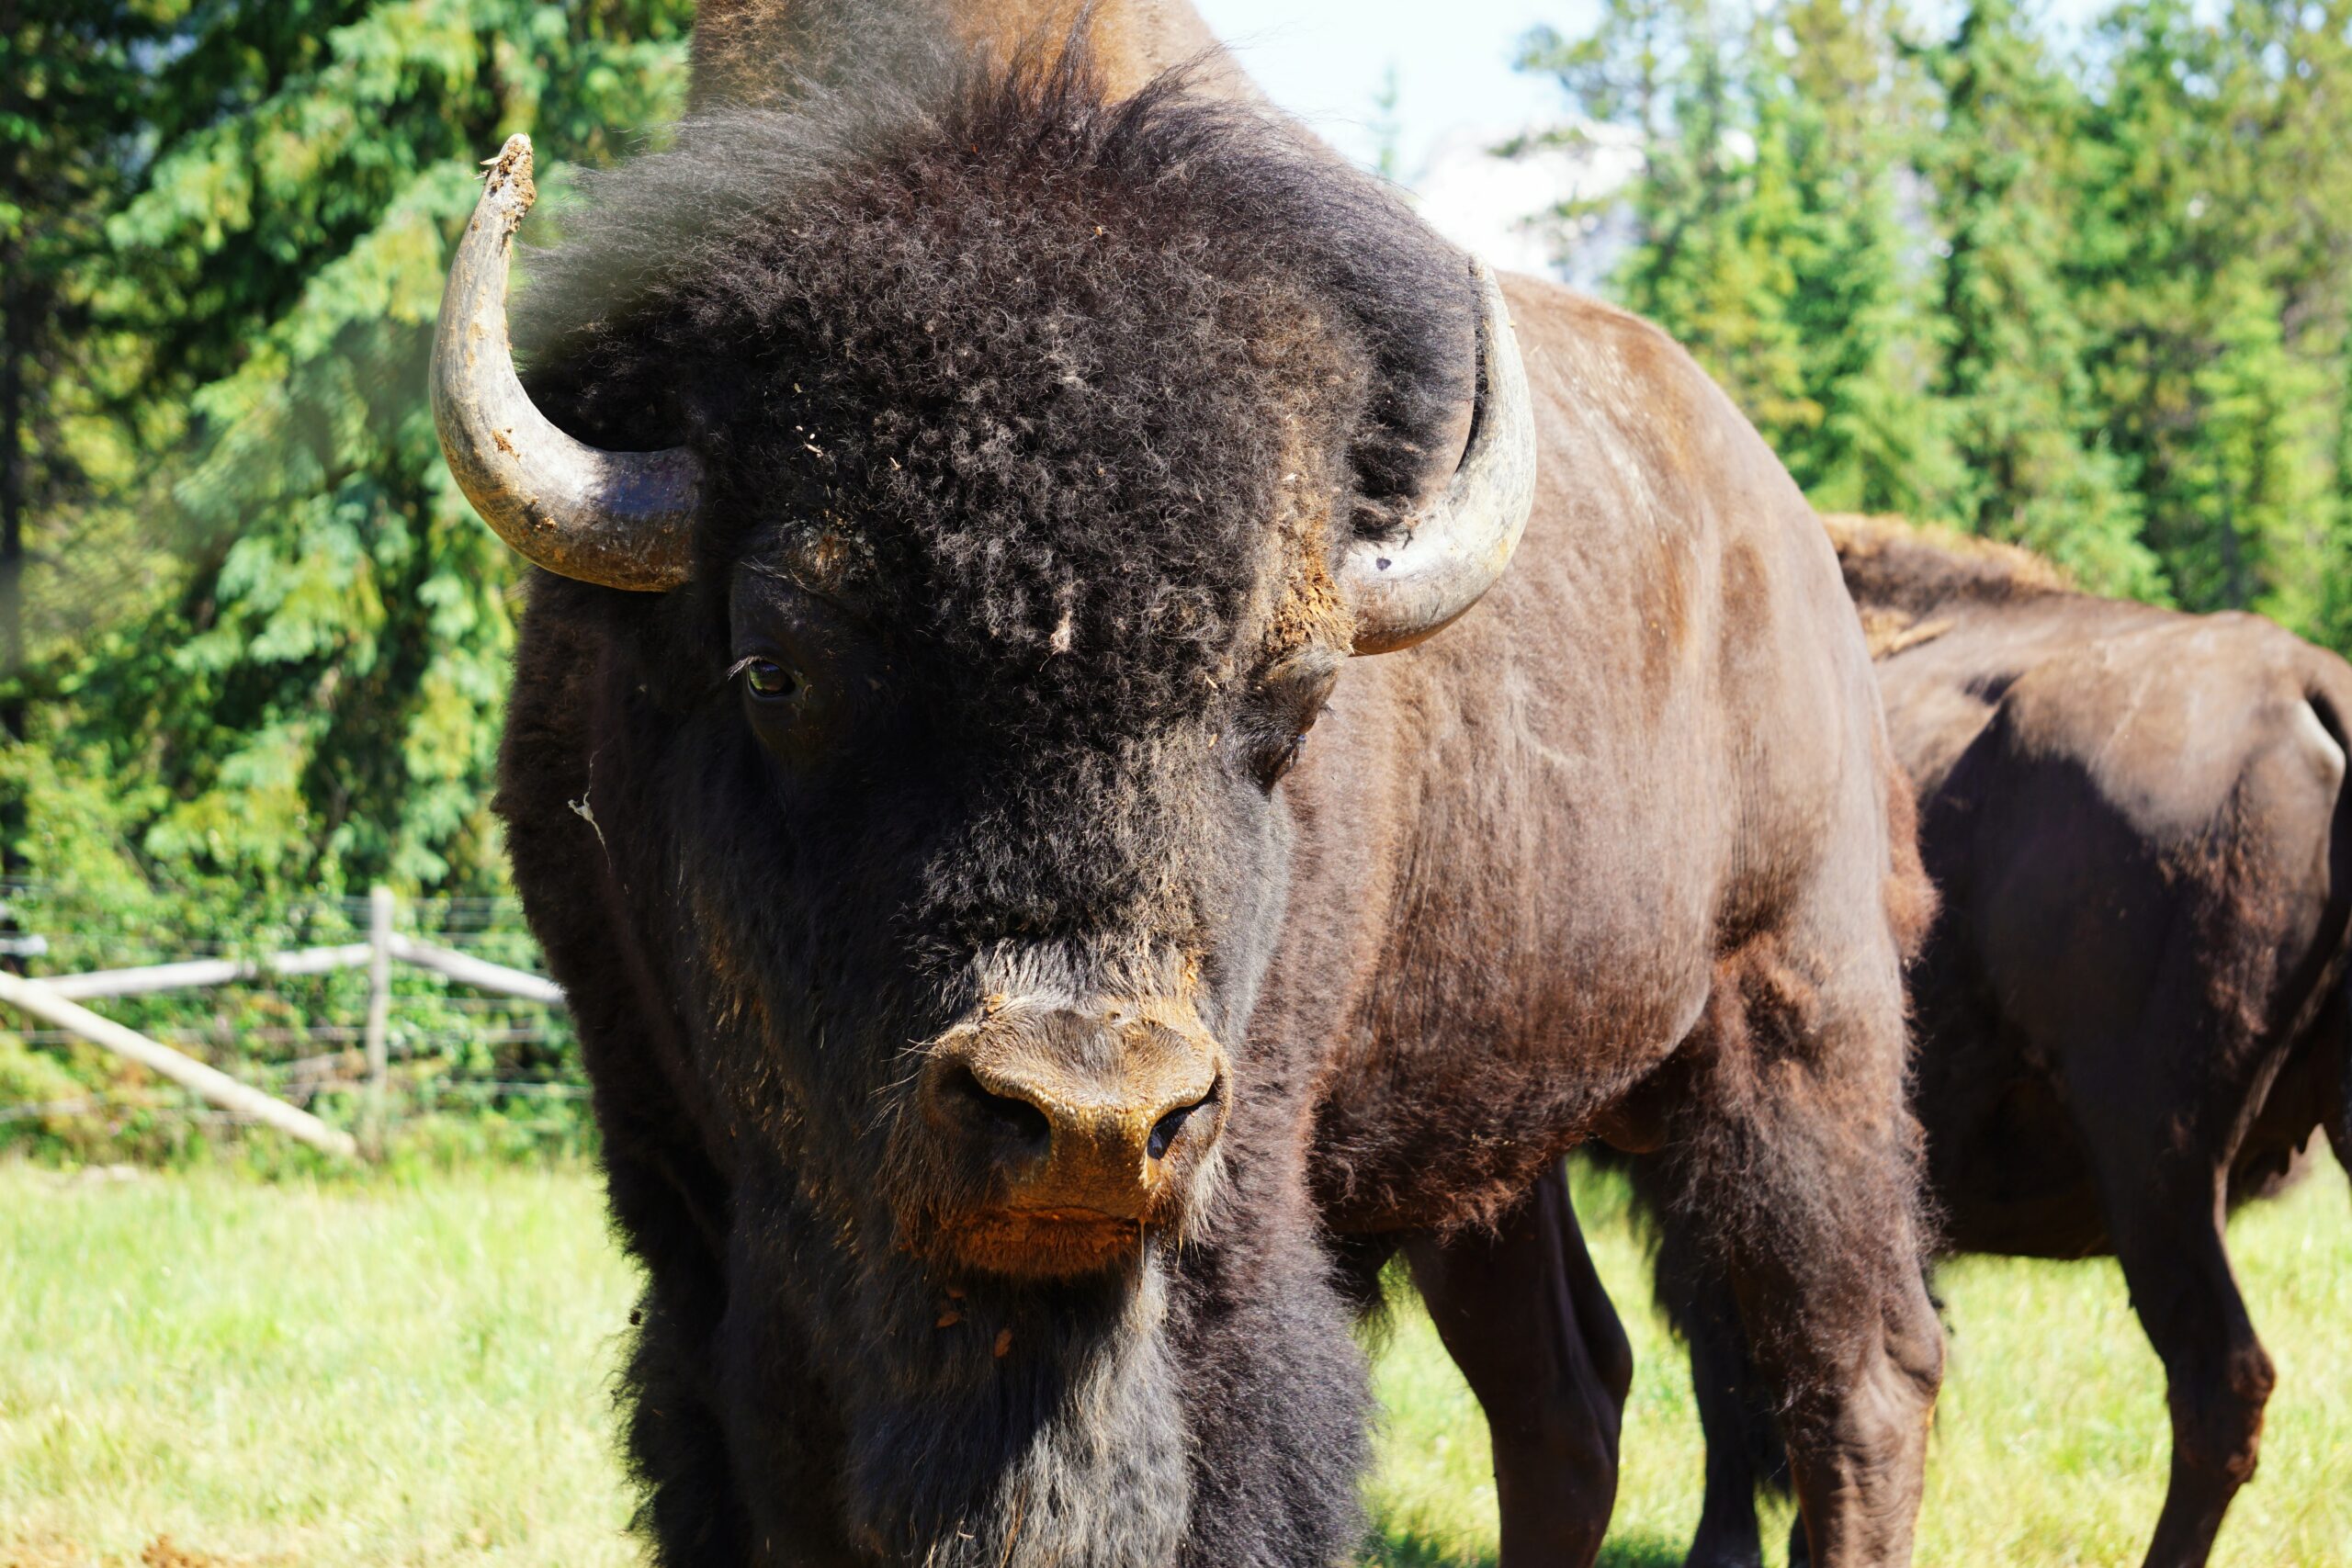 Curious bison. Photo by Maarten Van den Heuvel.